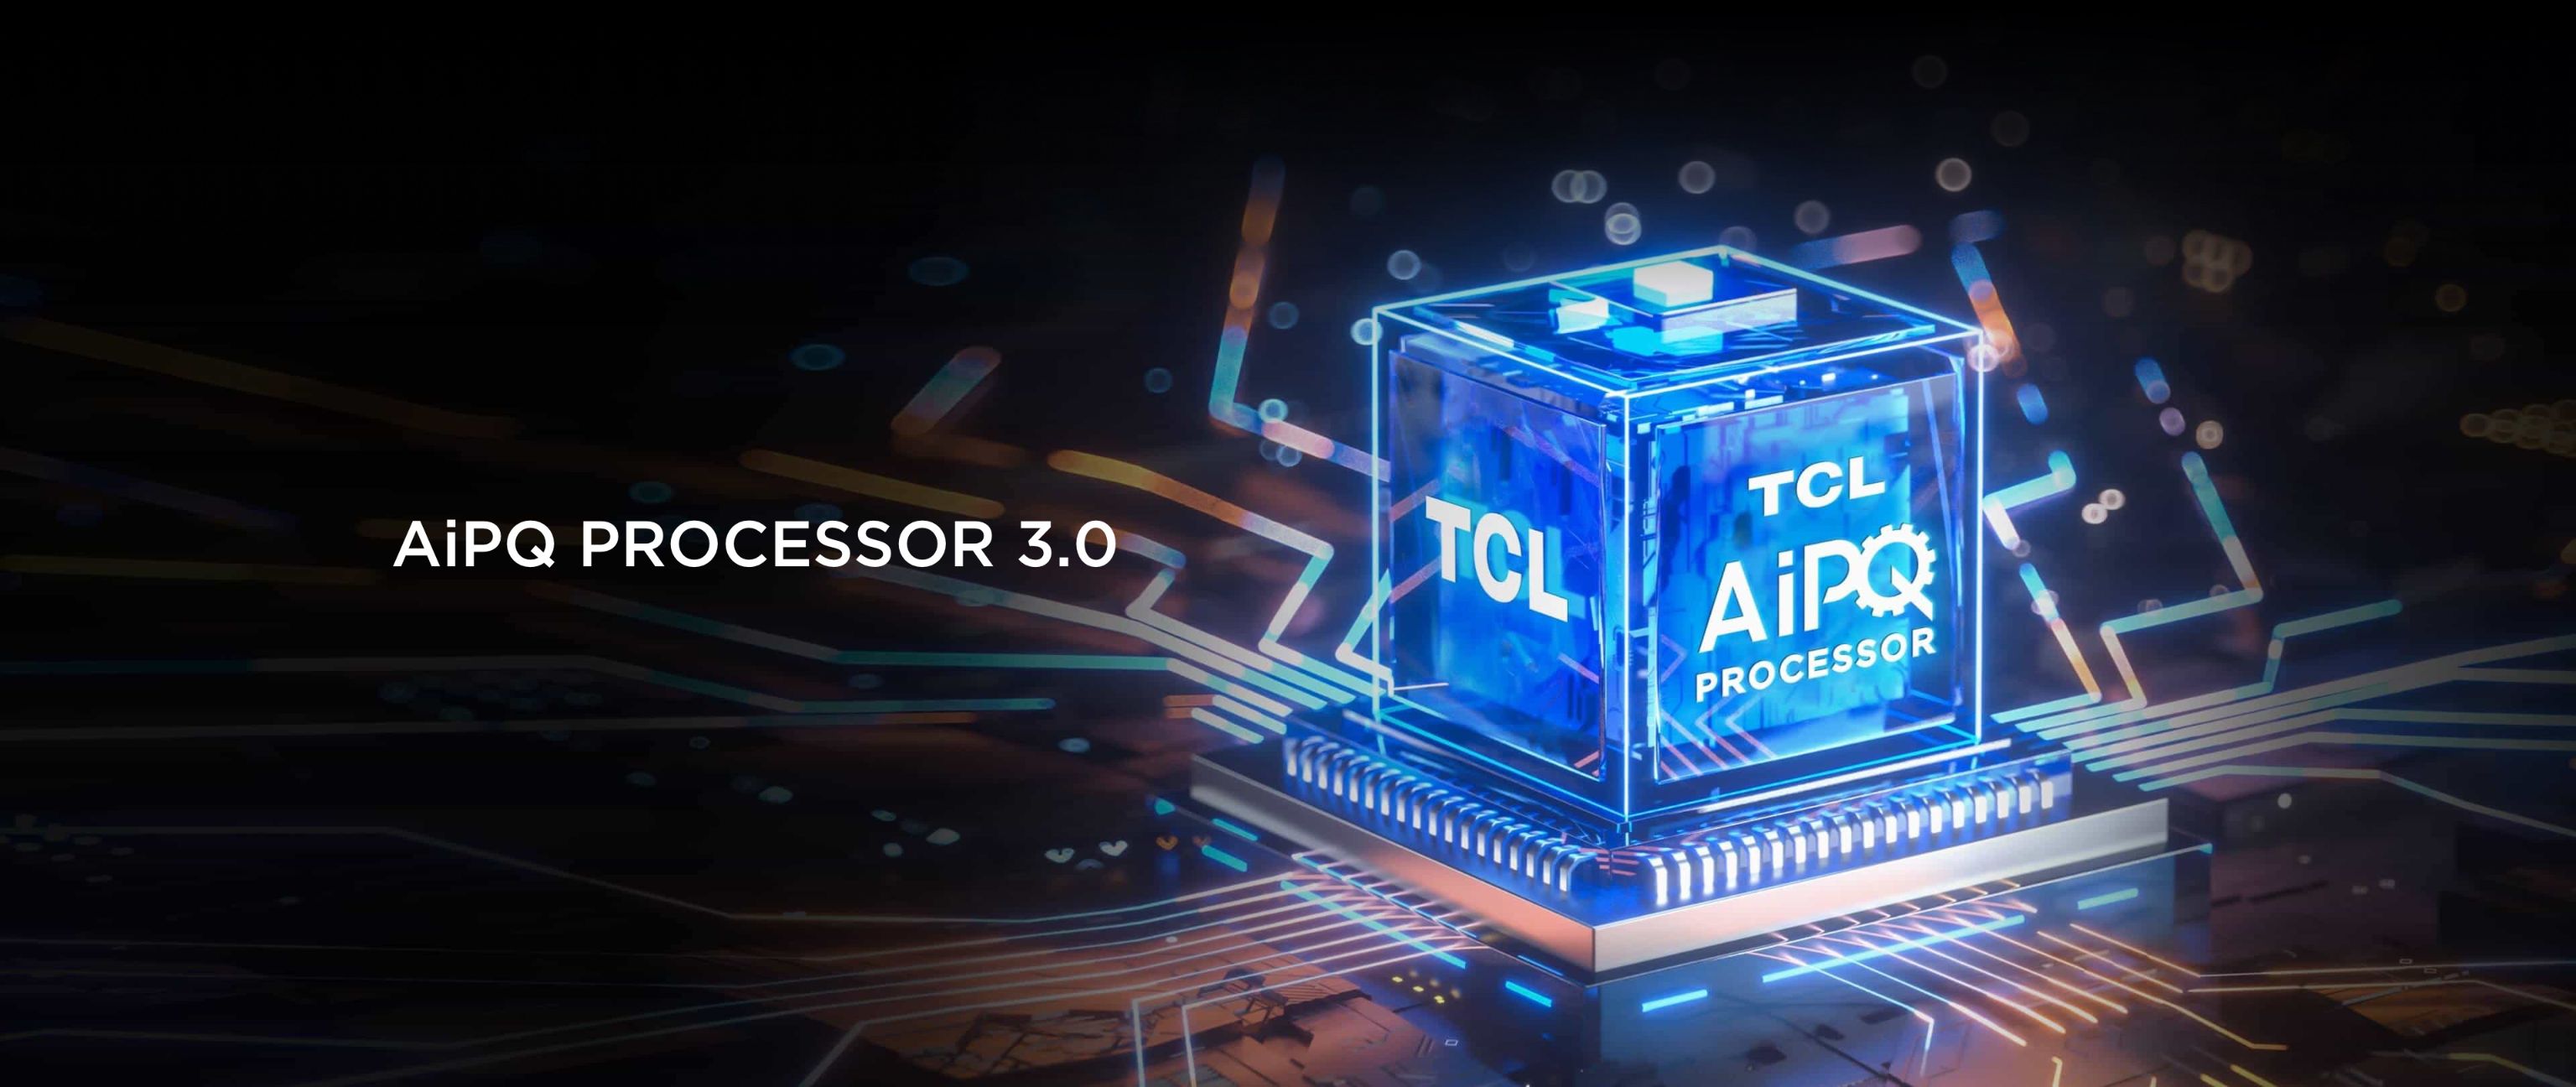 TCL C845 TV con PROCESADOR AiPQ 3.0